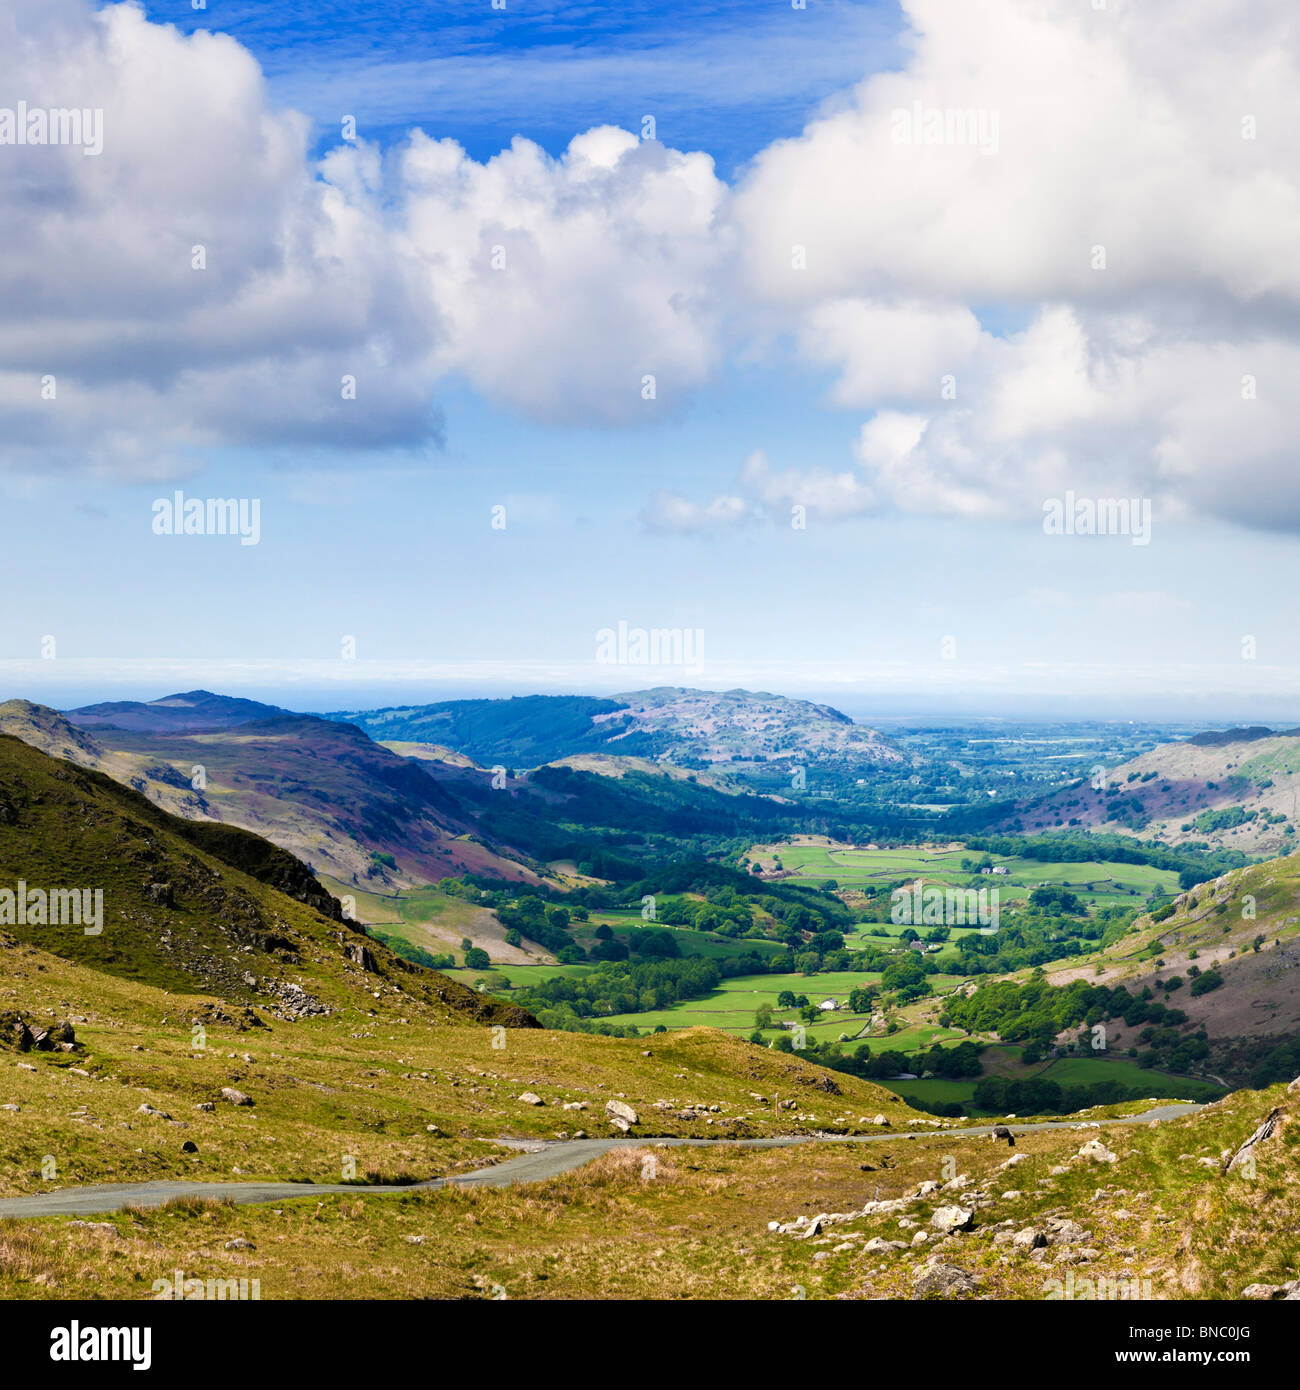 Pase Hardknott Eskdale Valley desde el distrito de Los Lagos de Cumbria Inglaterra Foto de stock